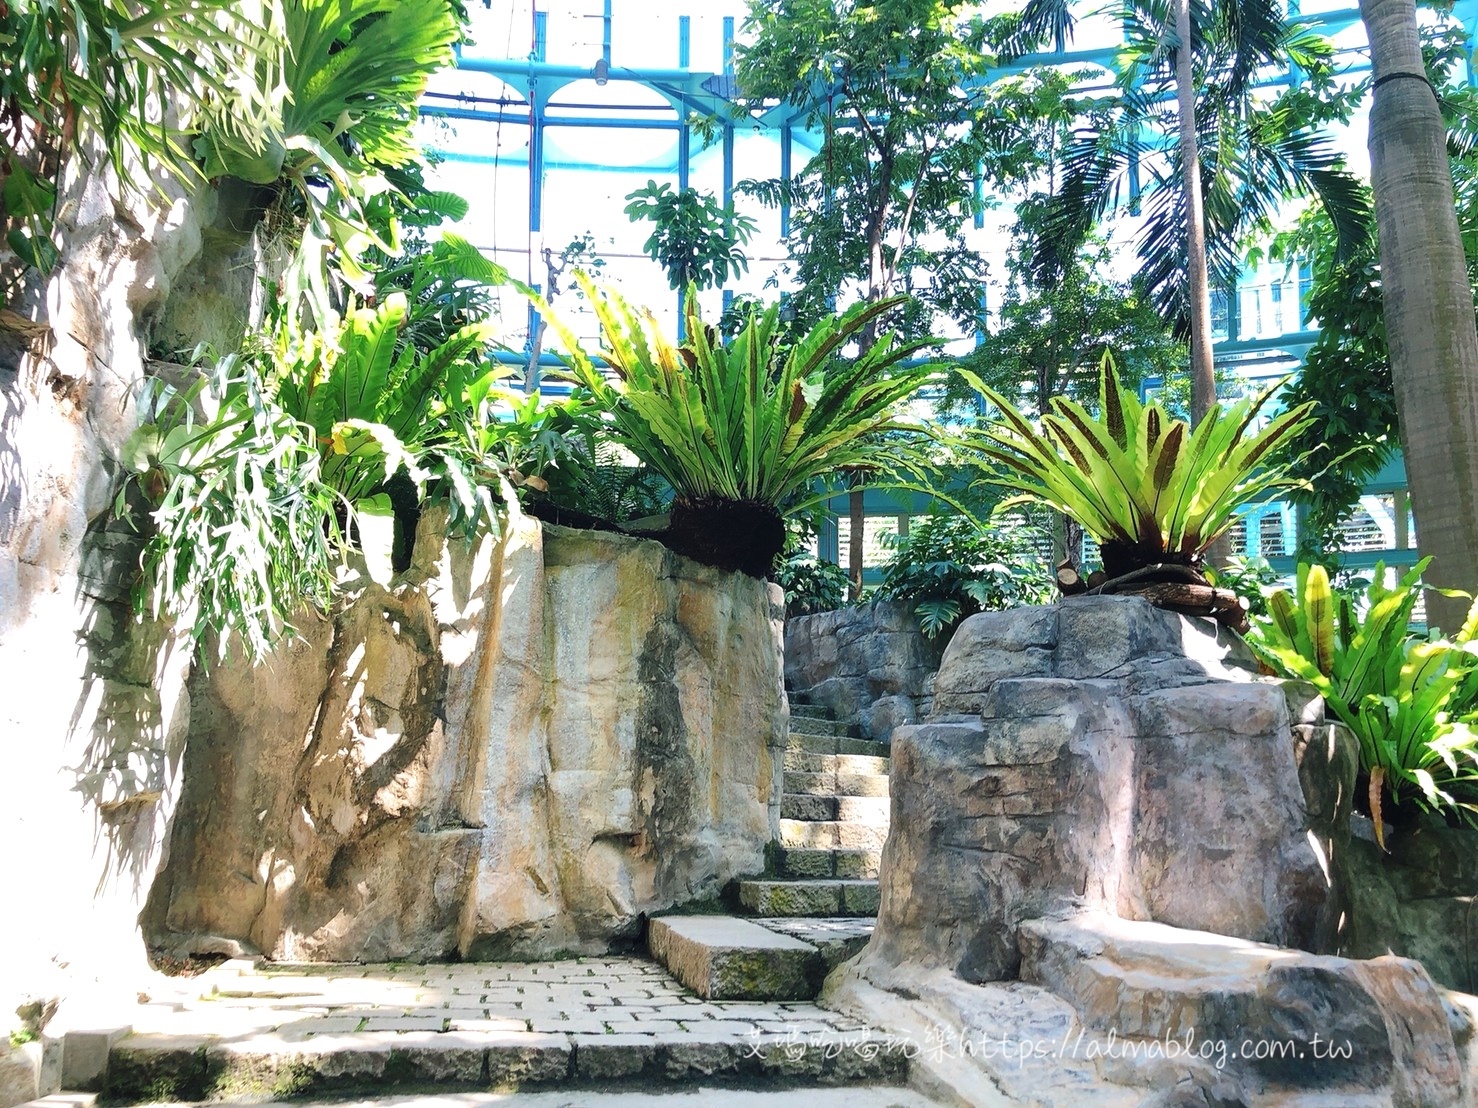 台中科學博物館植物園